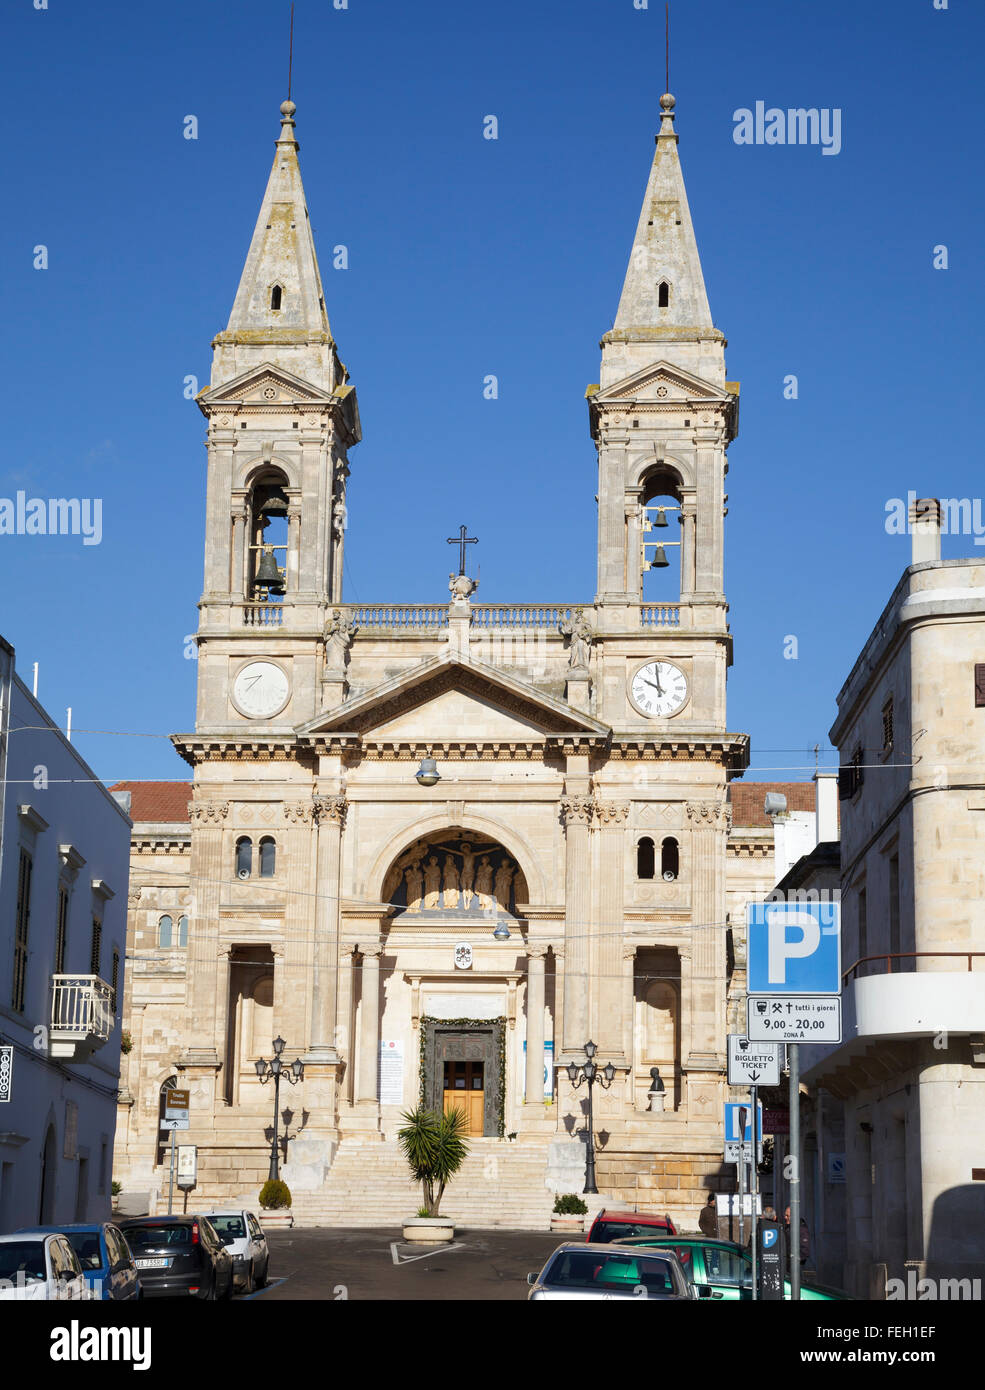 Basilica Miniore dei Santi Cosma e Damiano, Alberobello, Puglia, Italy Stock Photo